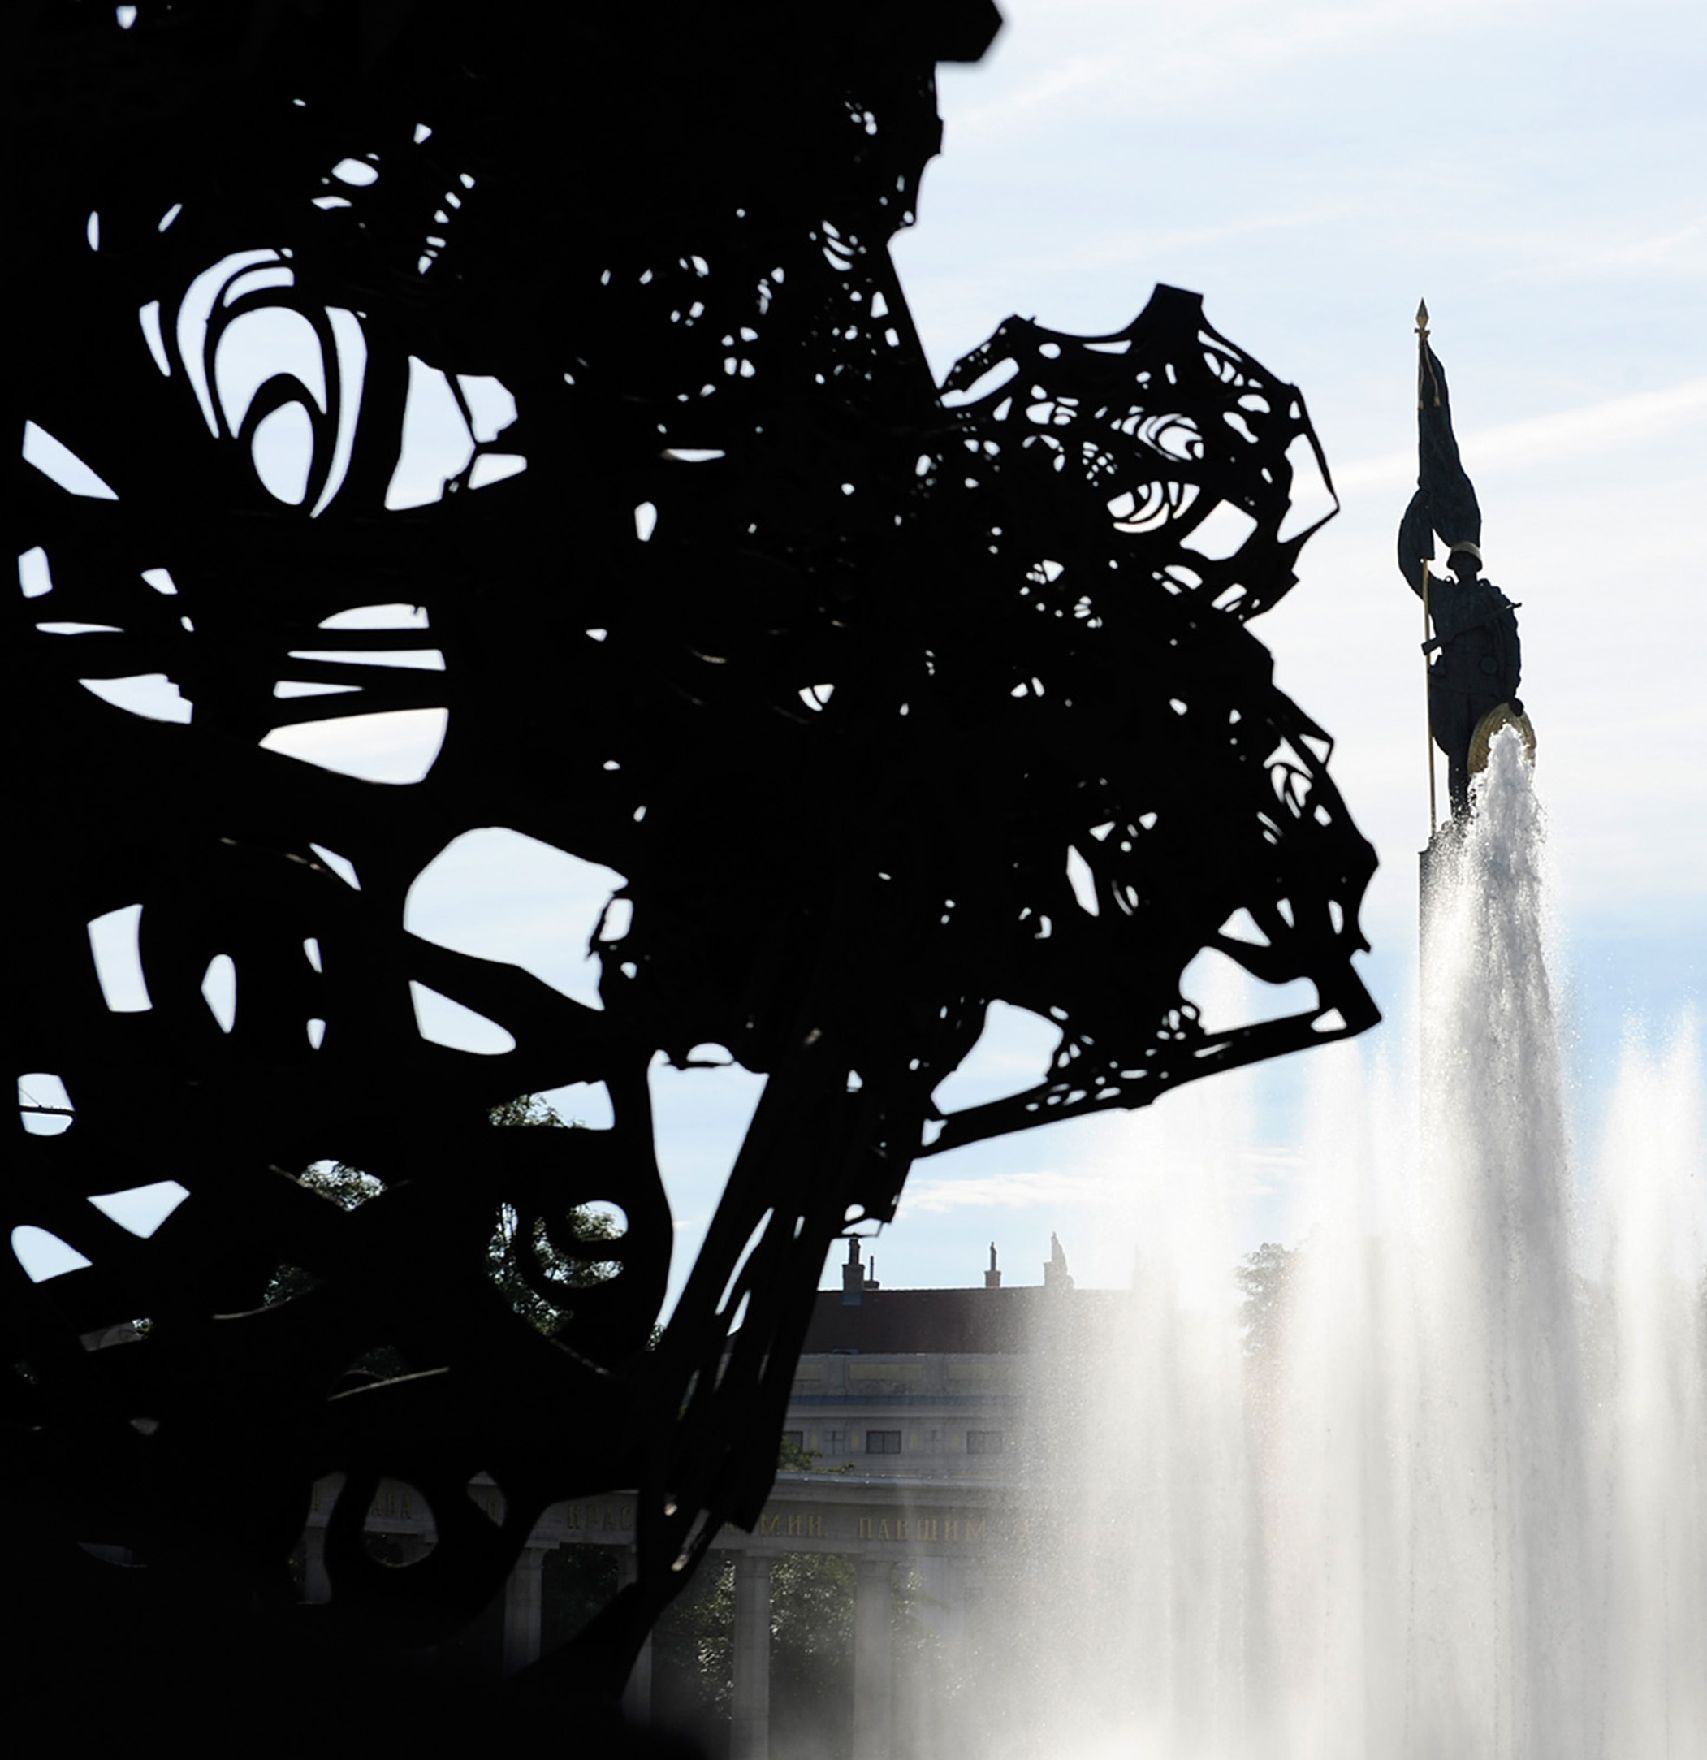 Der Hochstrahlbrunnen am Schwarzenbergplatz. Schlagworte: Brunnen, Stadtlandschaft, Statue, Wasser